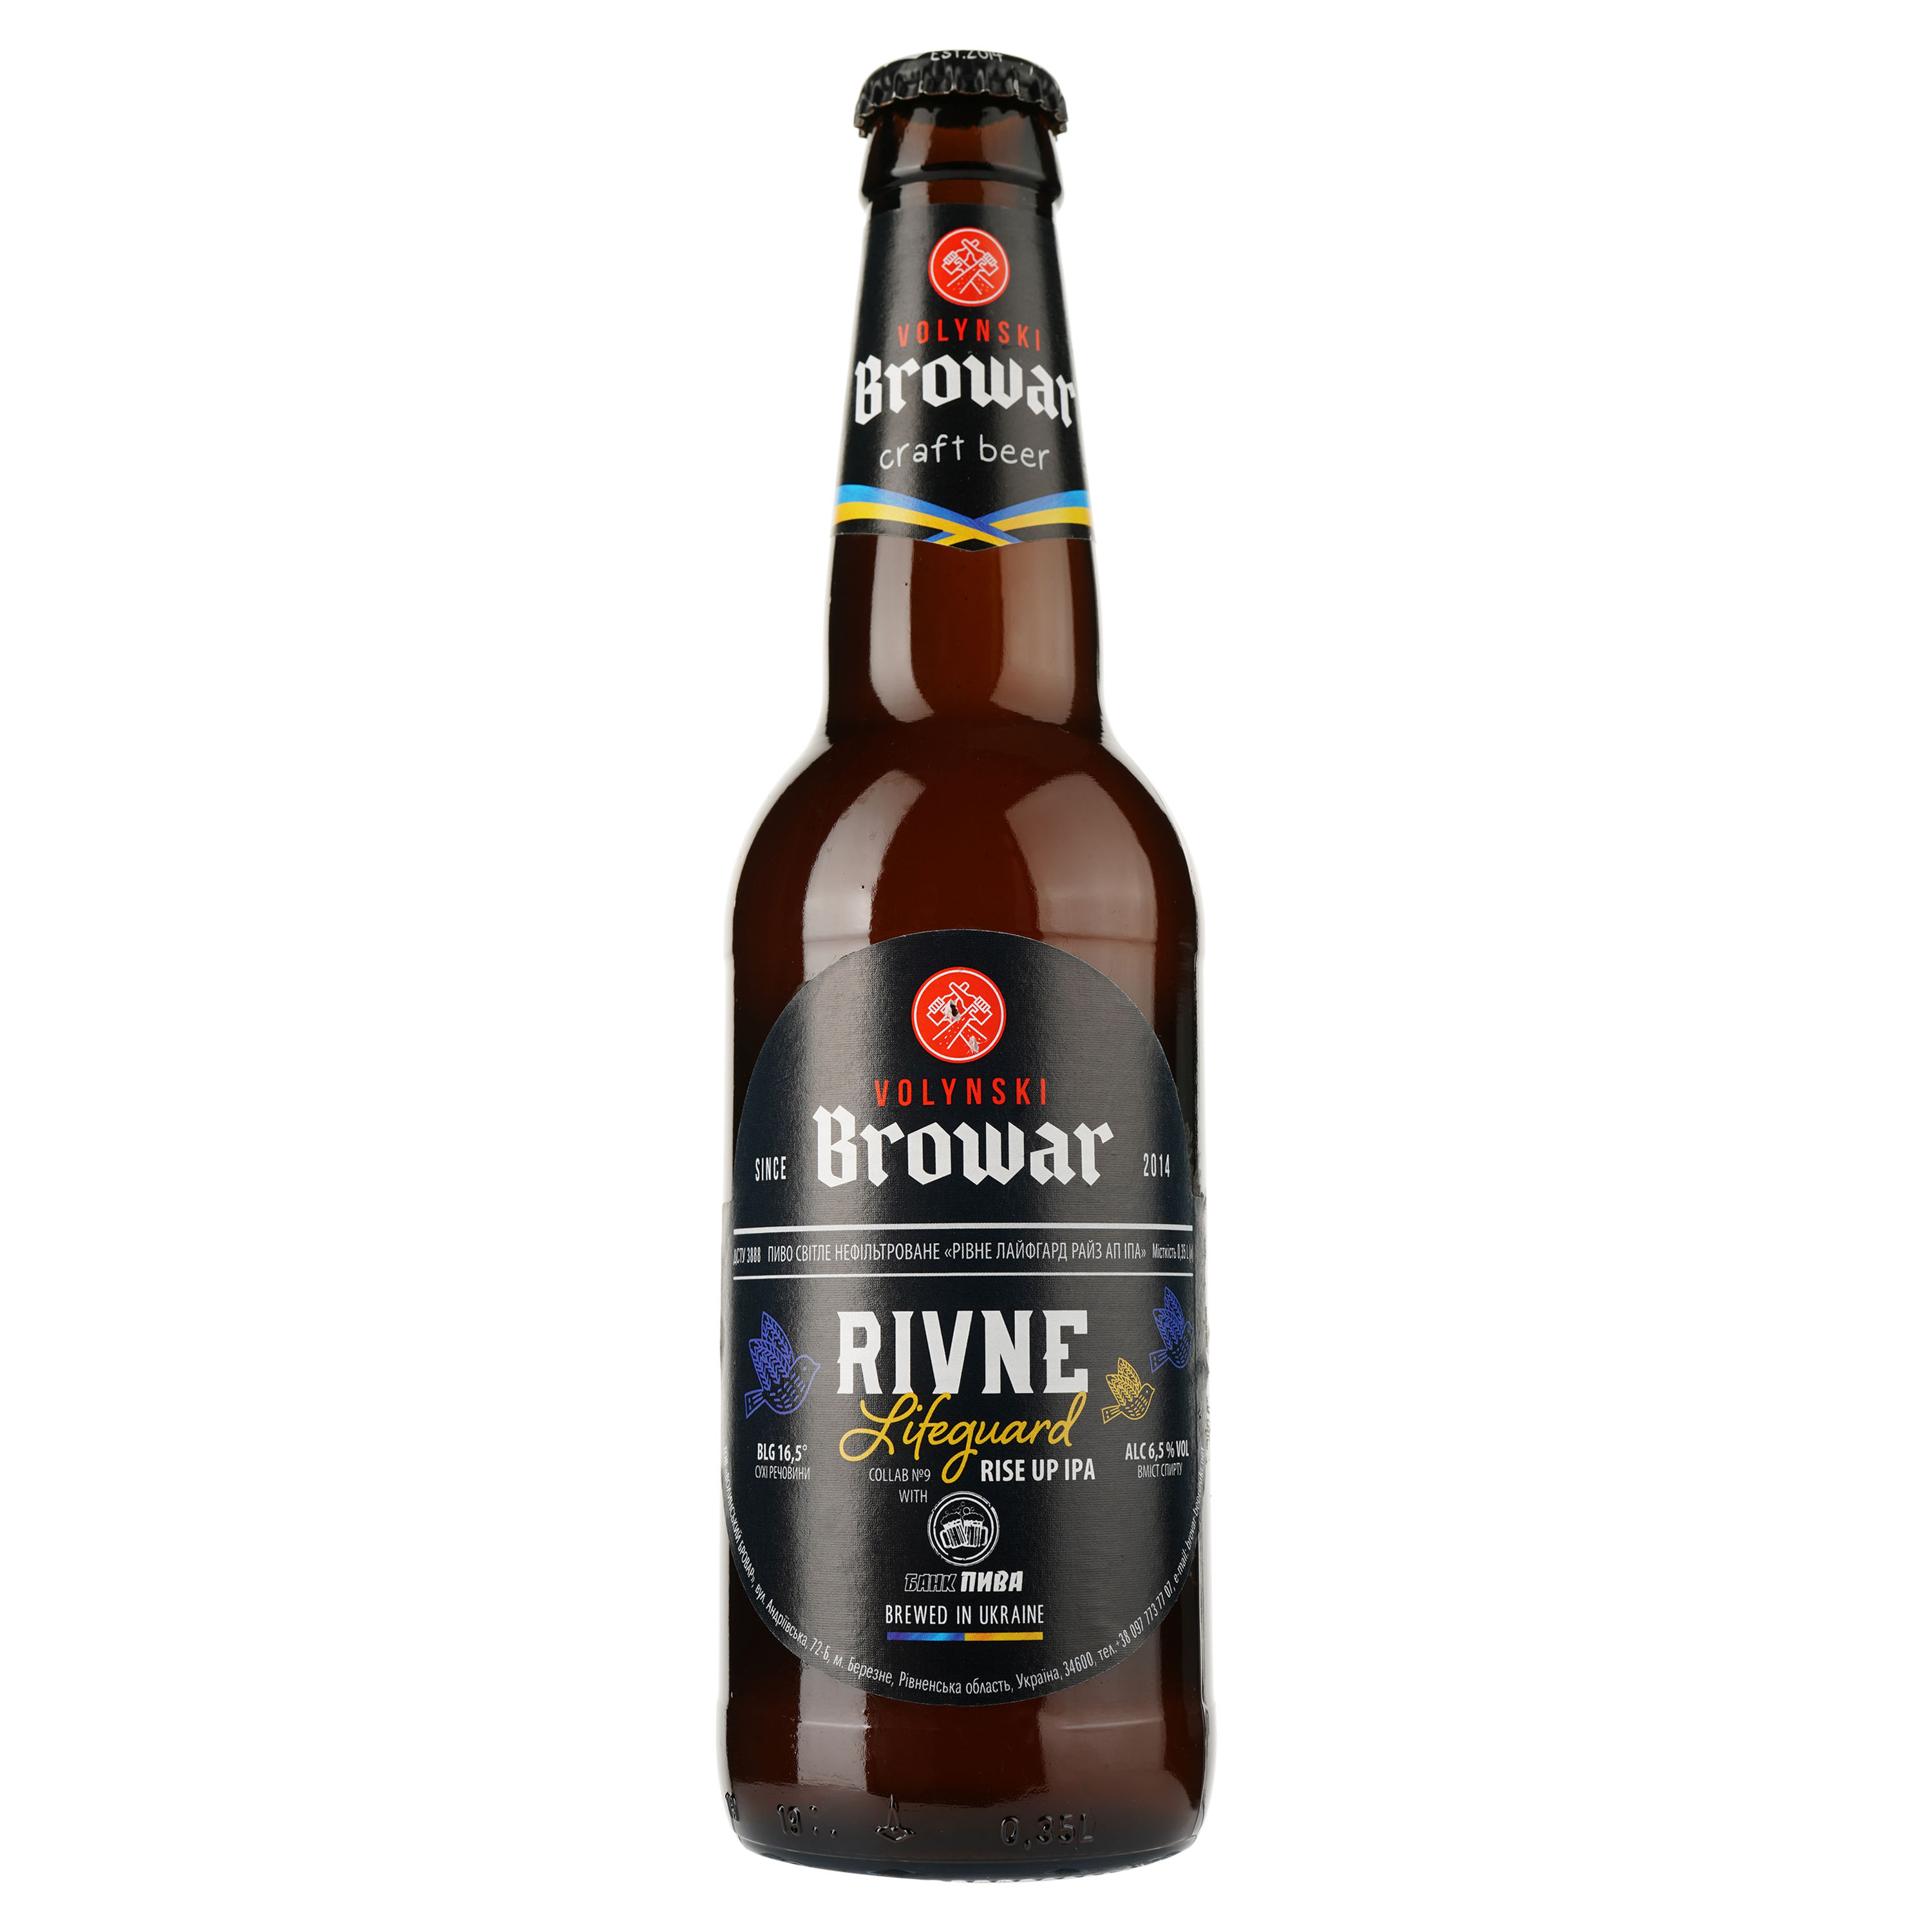 Пиво Volynski Browar Rivne Lifeguard, светлое, нефильтрованное, 6,5%, 0,35 л - фото 1